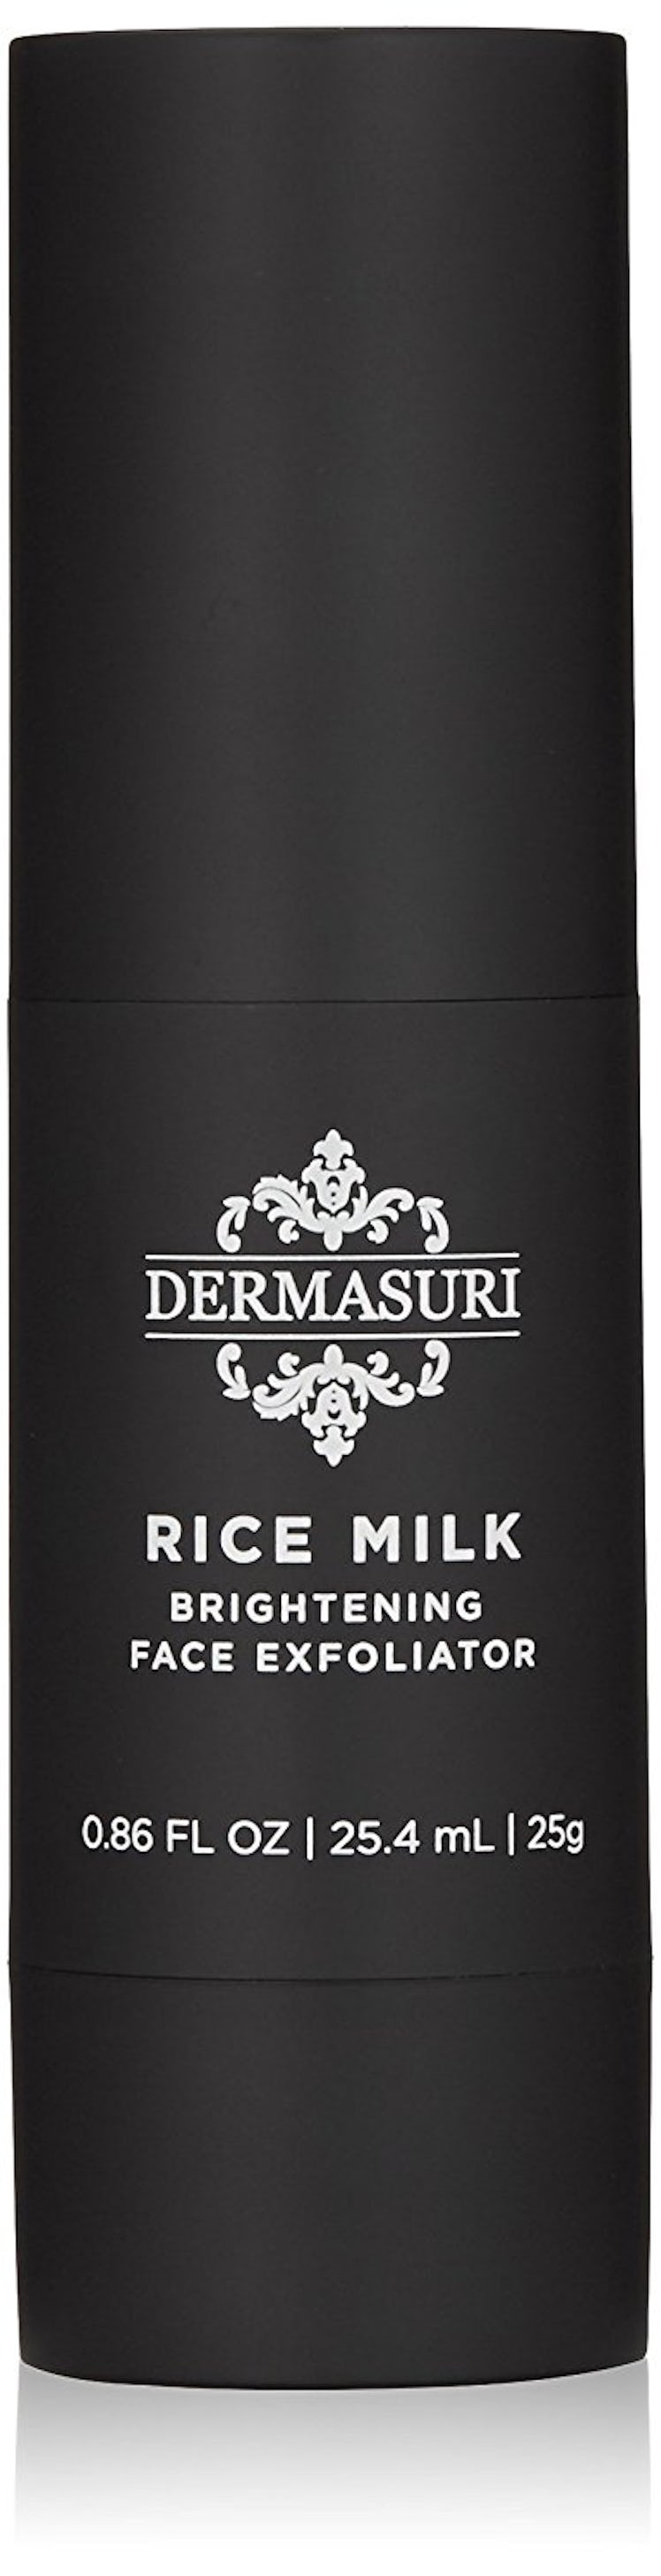 Dermasuri Rice Milk Brightening Face Exfoliator